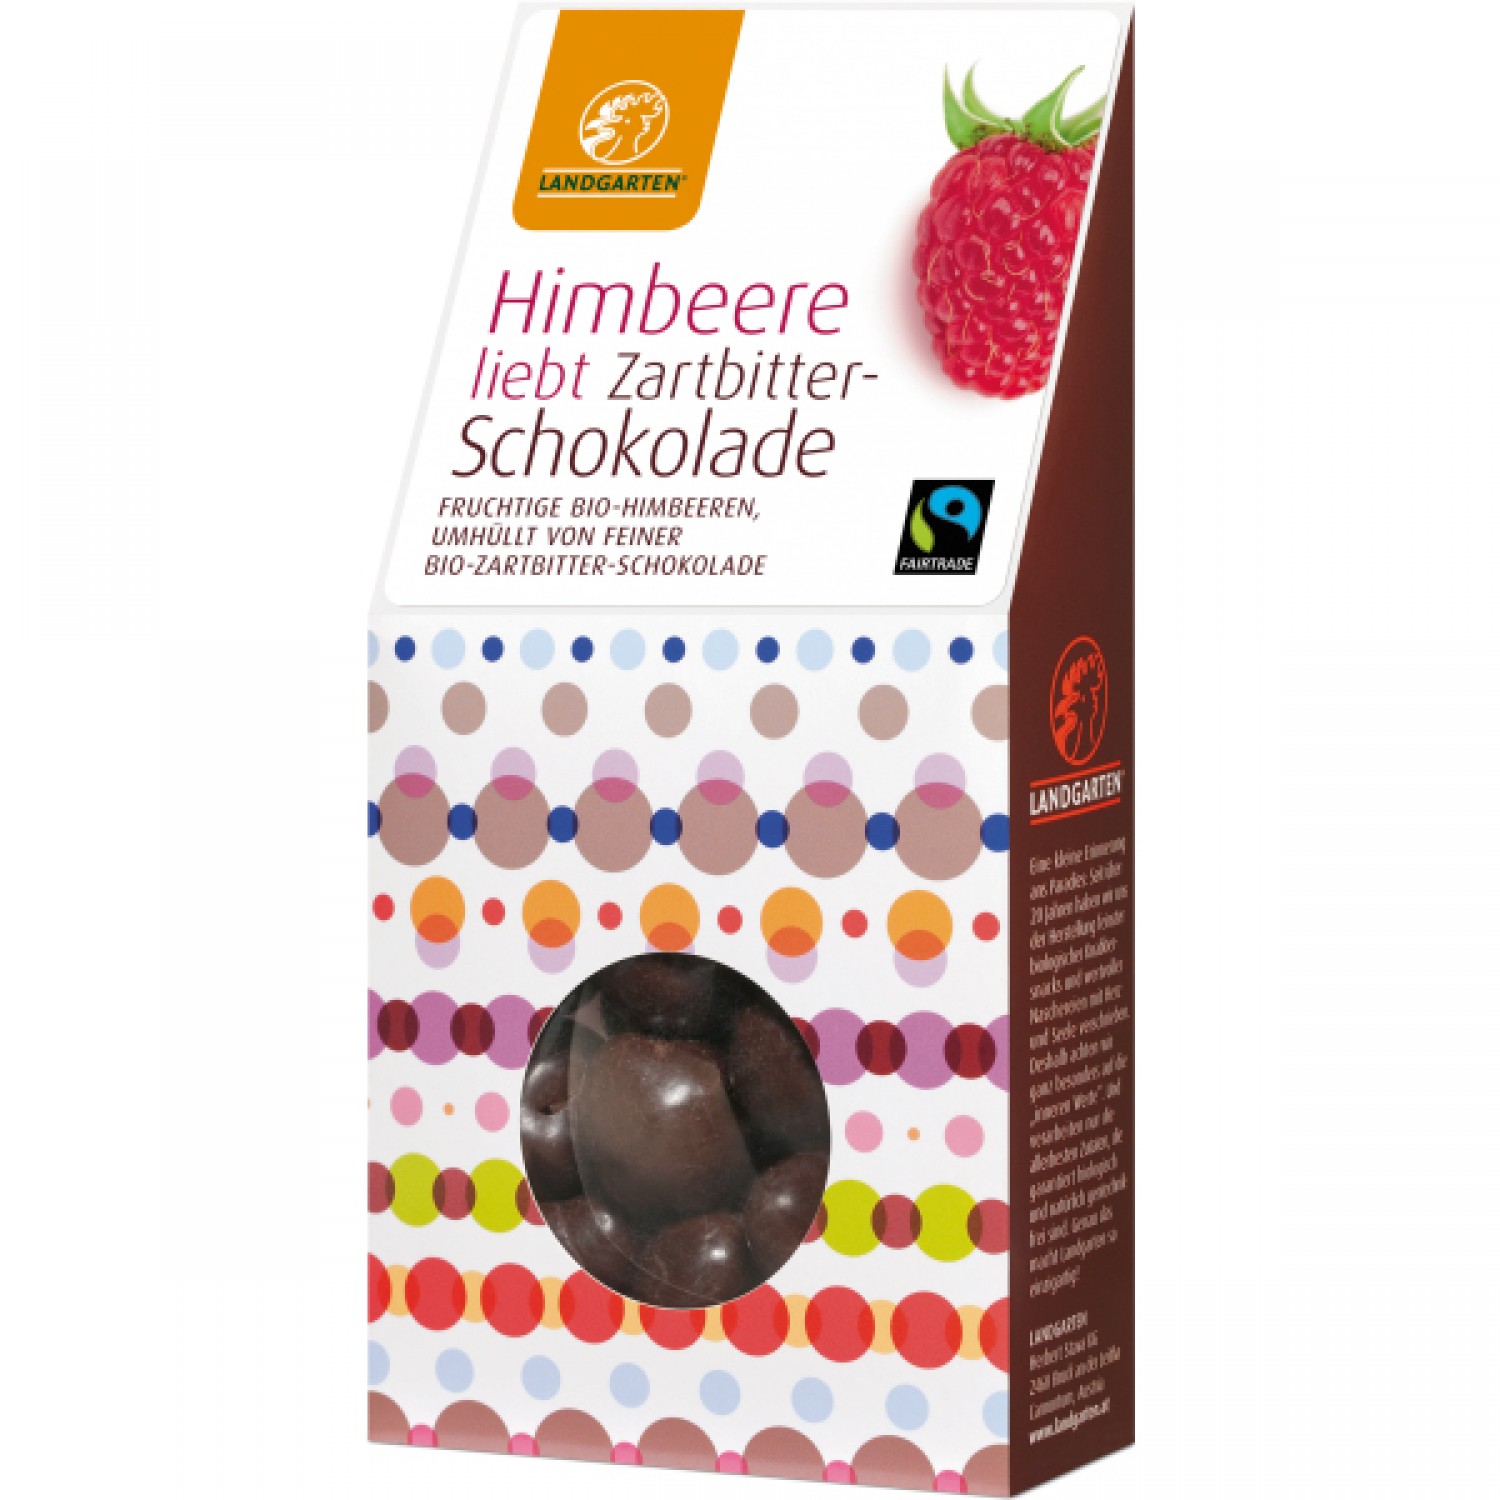 Bio-Snack Himbeere liebt Zartbitterschokolade | Landgarten